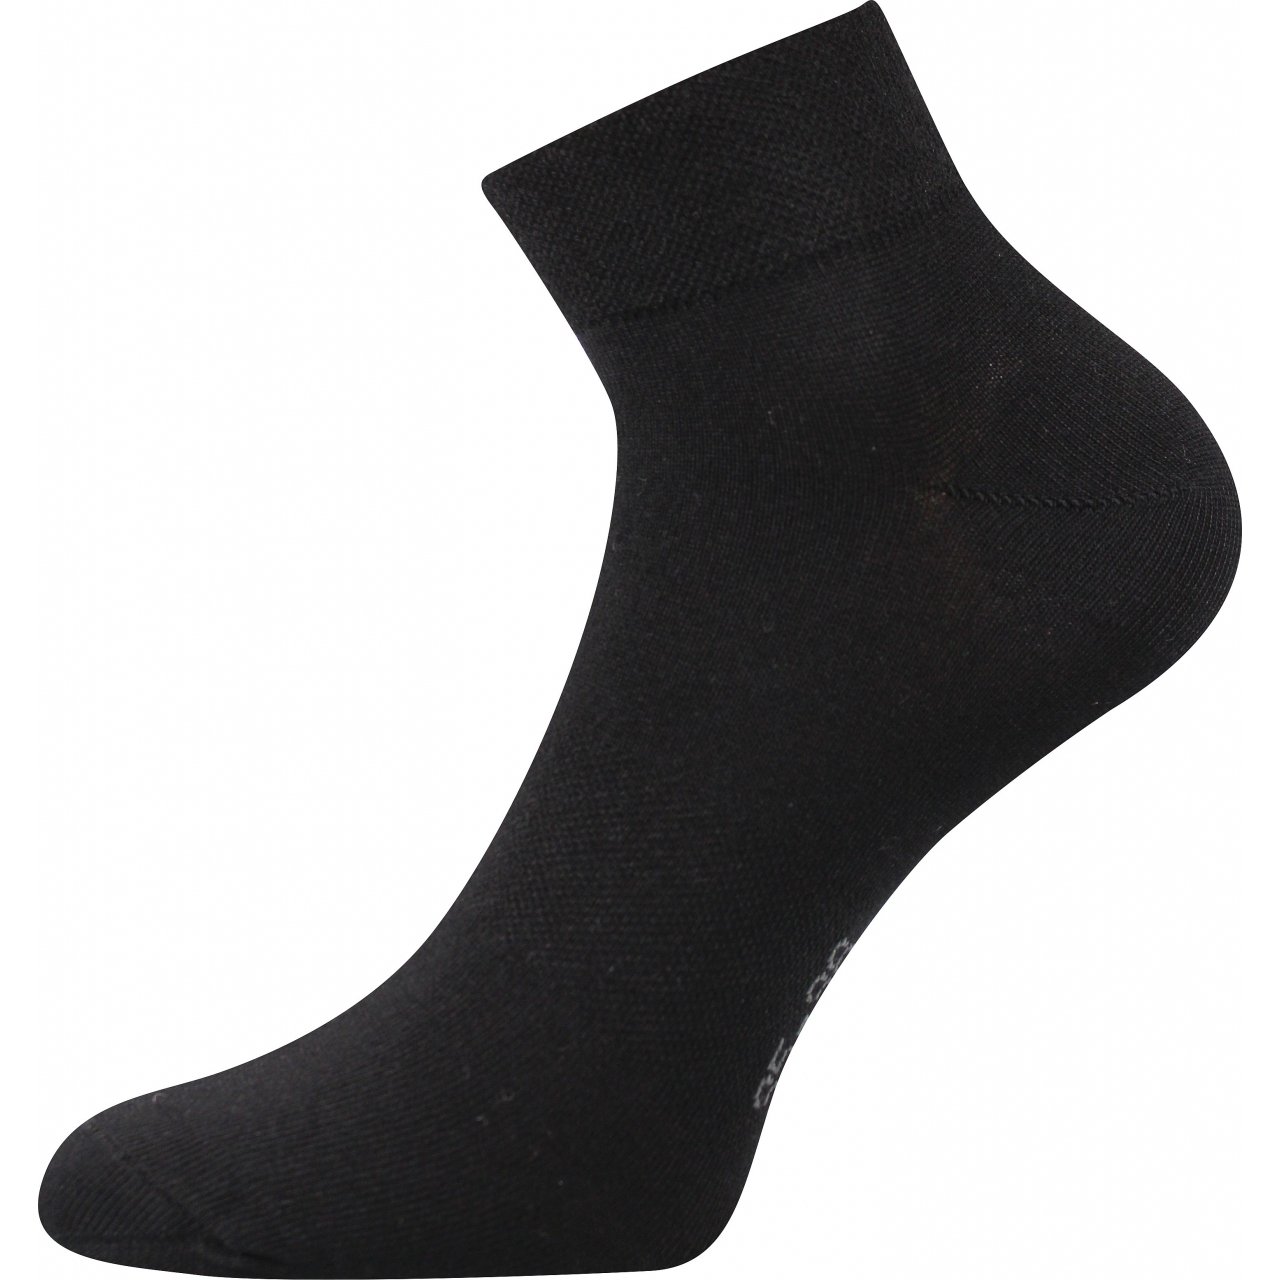 Ponožky unisex Lonka Raban - černé, 43-46